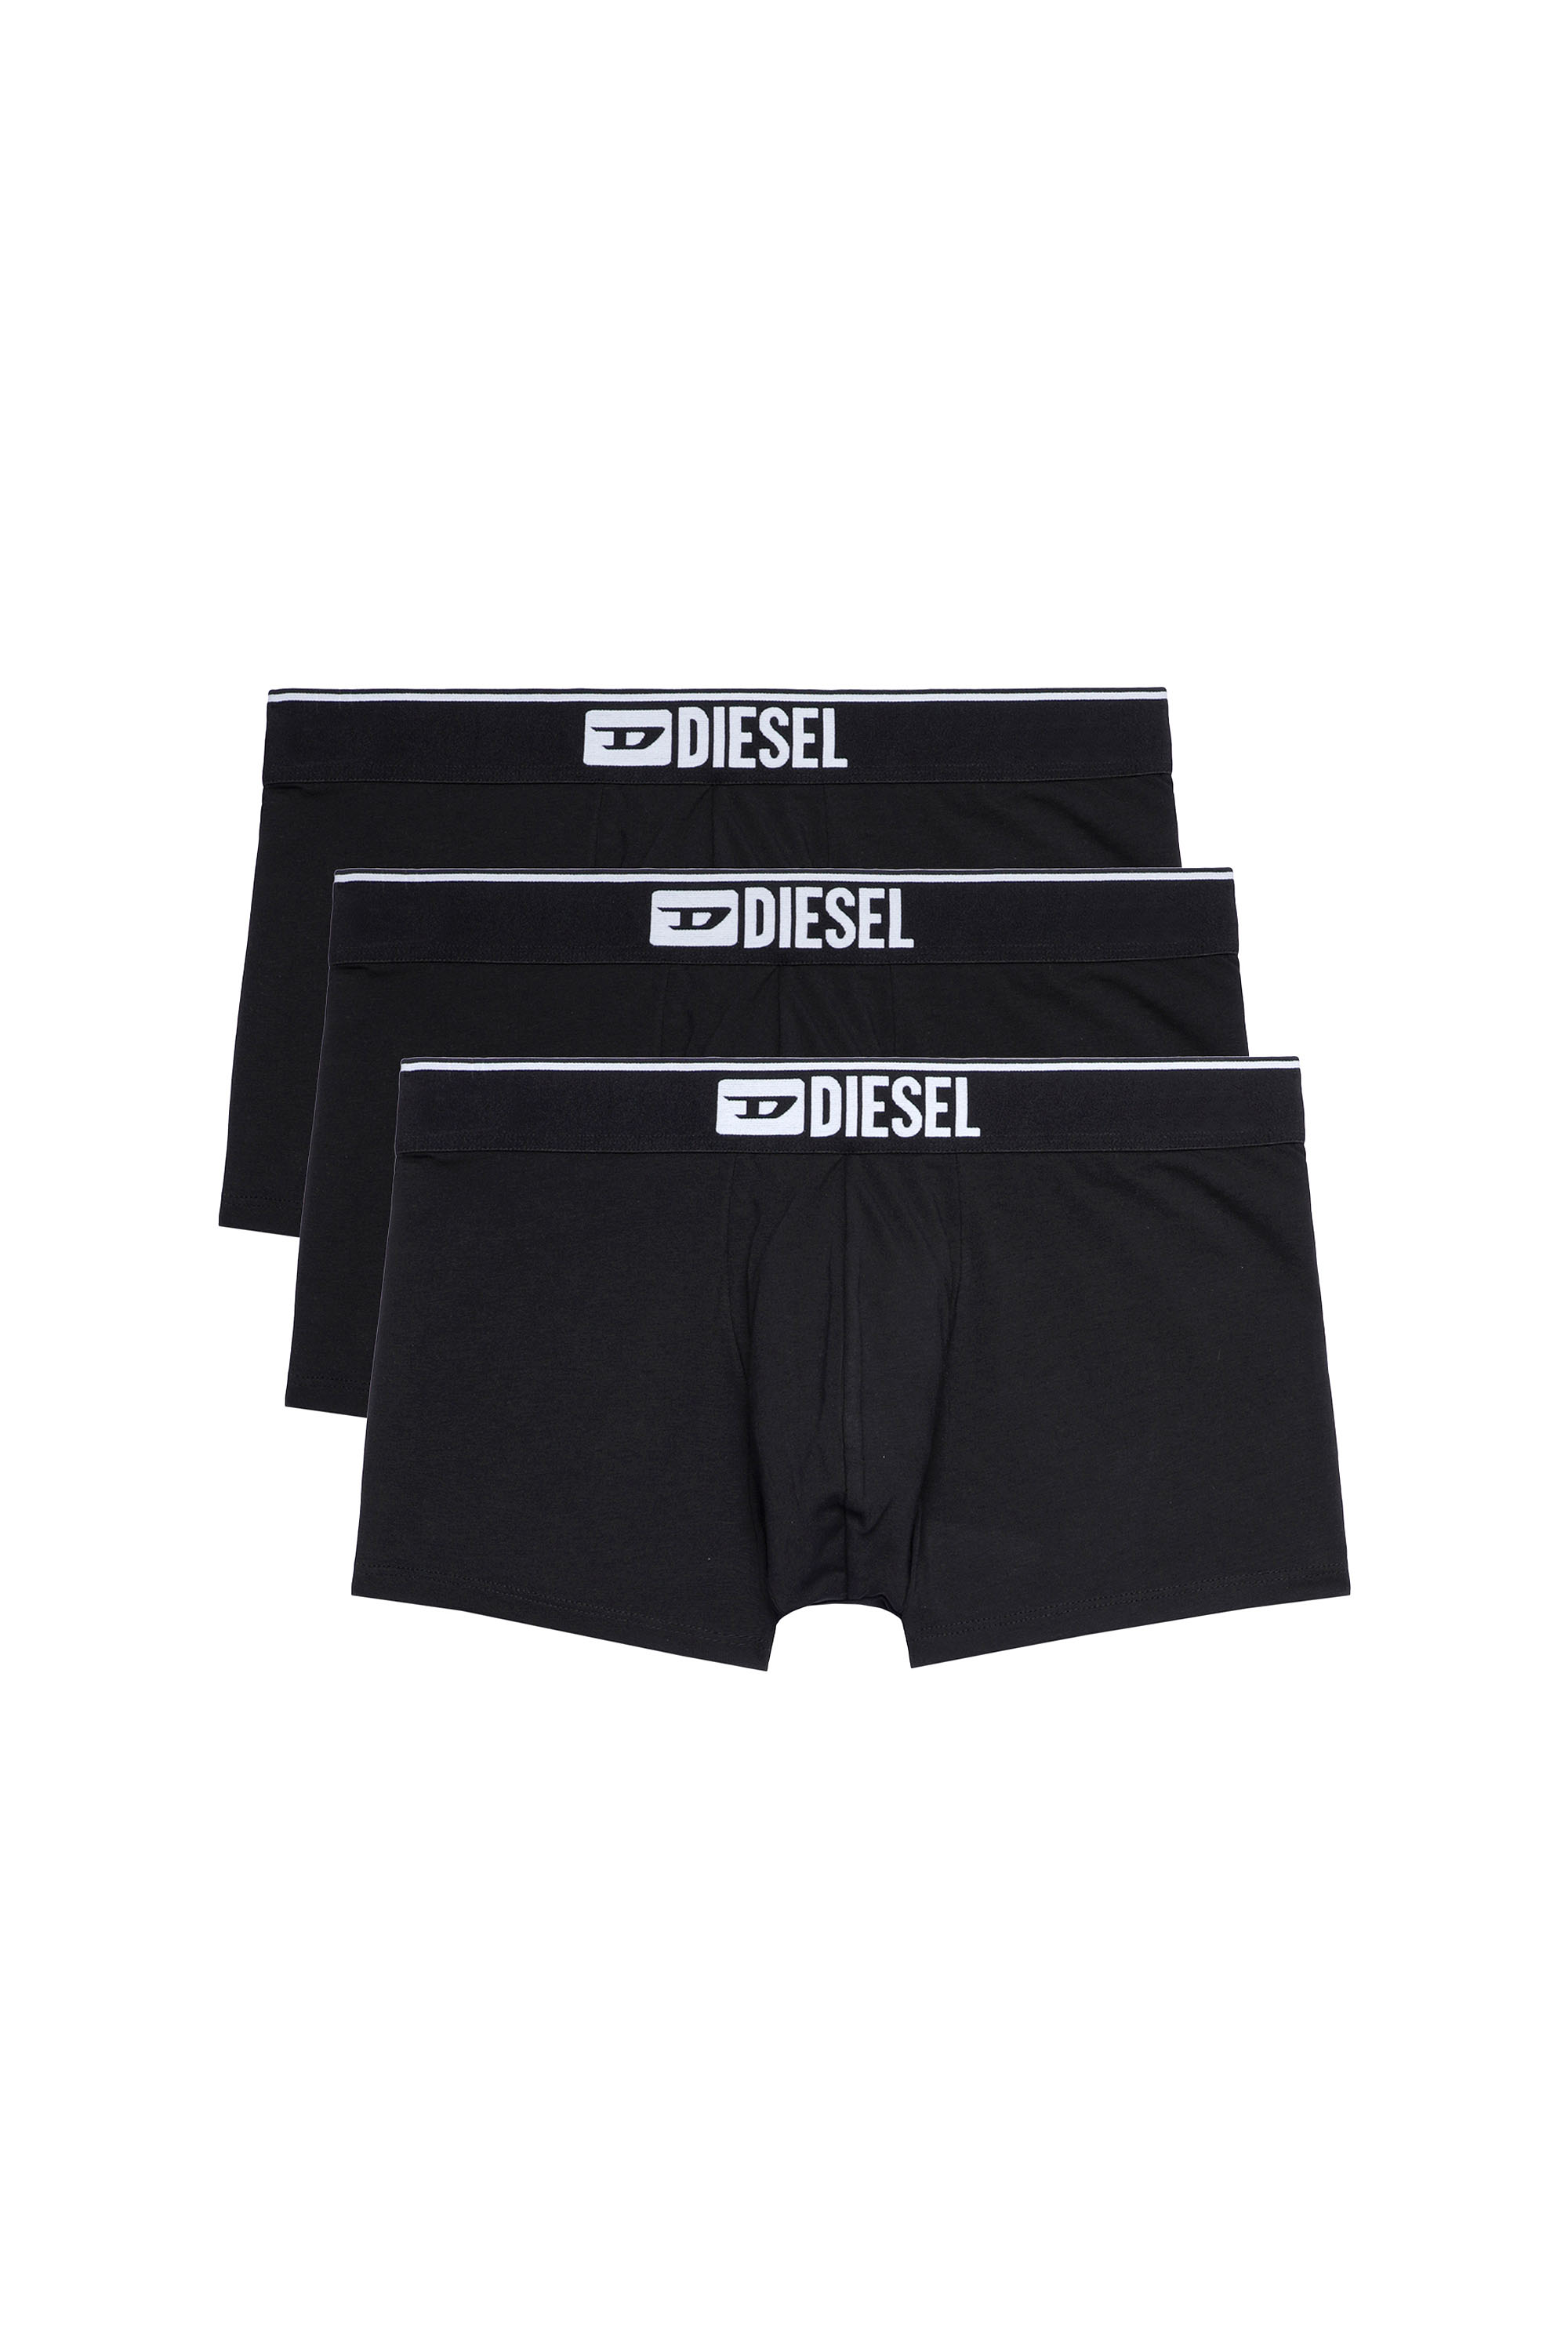 Diesel - UMBX-DAMIENTHREEPACK, Man Three-pack of plain boxer briefs in Black - Image 1